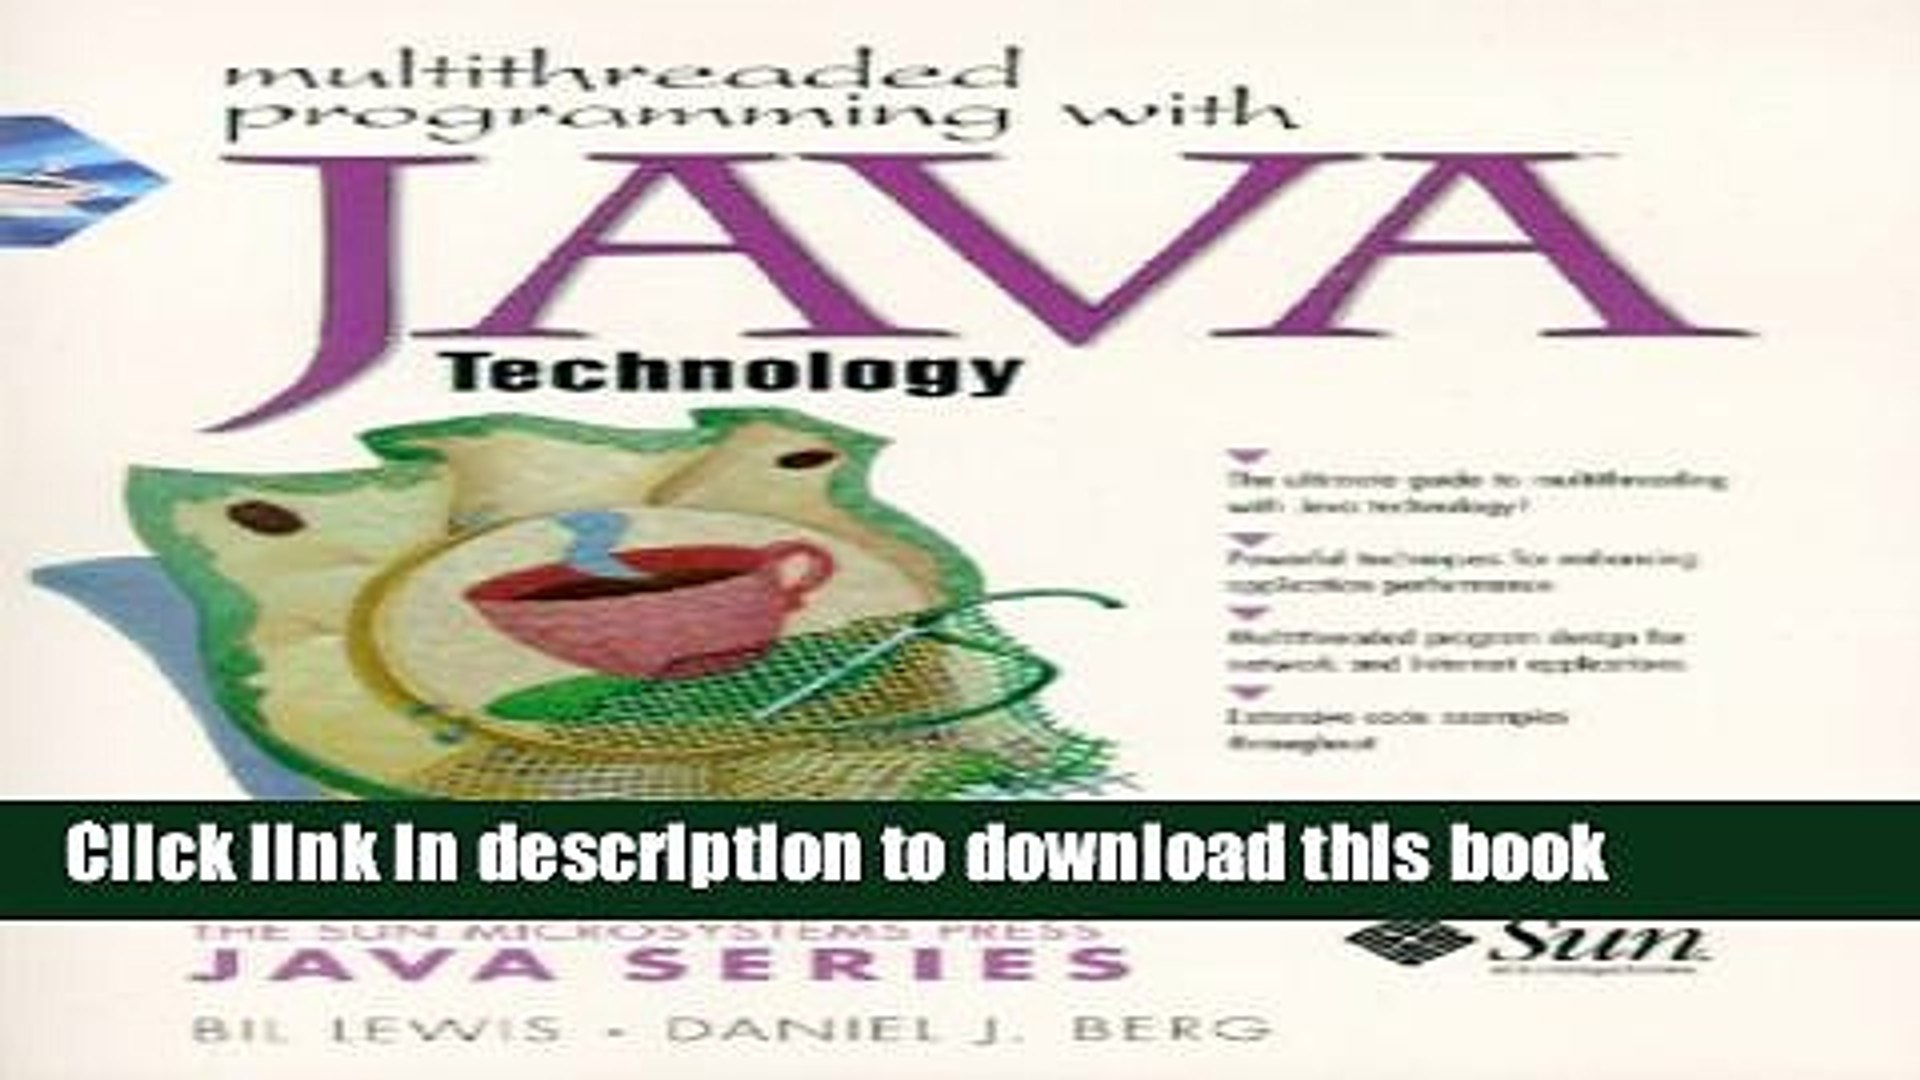 Books Multithreaded Programming with Java Technology Full Online